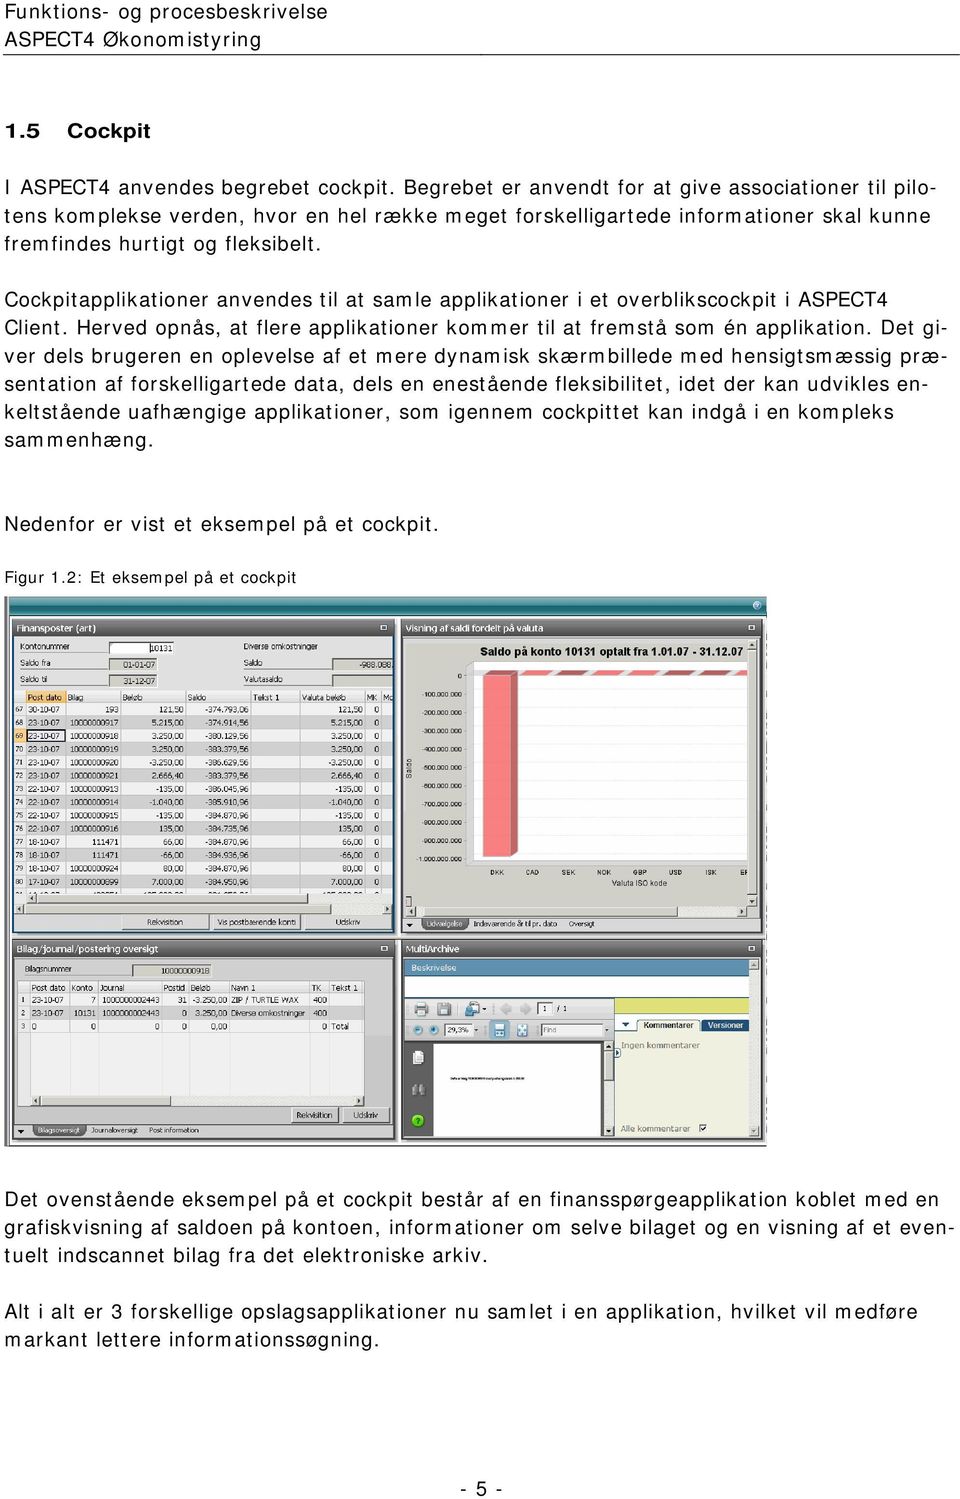 Cockpitapplikationer anvendes til at samle applikationer i et overblikscockpit i ASPECT4 Client. Herved opnås, at flere applikationer kommer til at fremstå som én applikation.